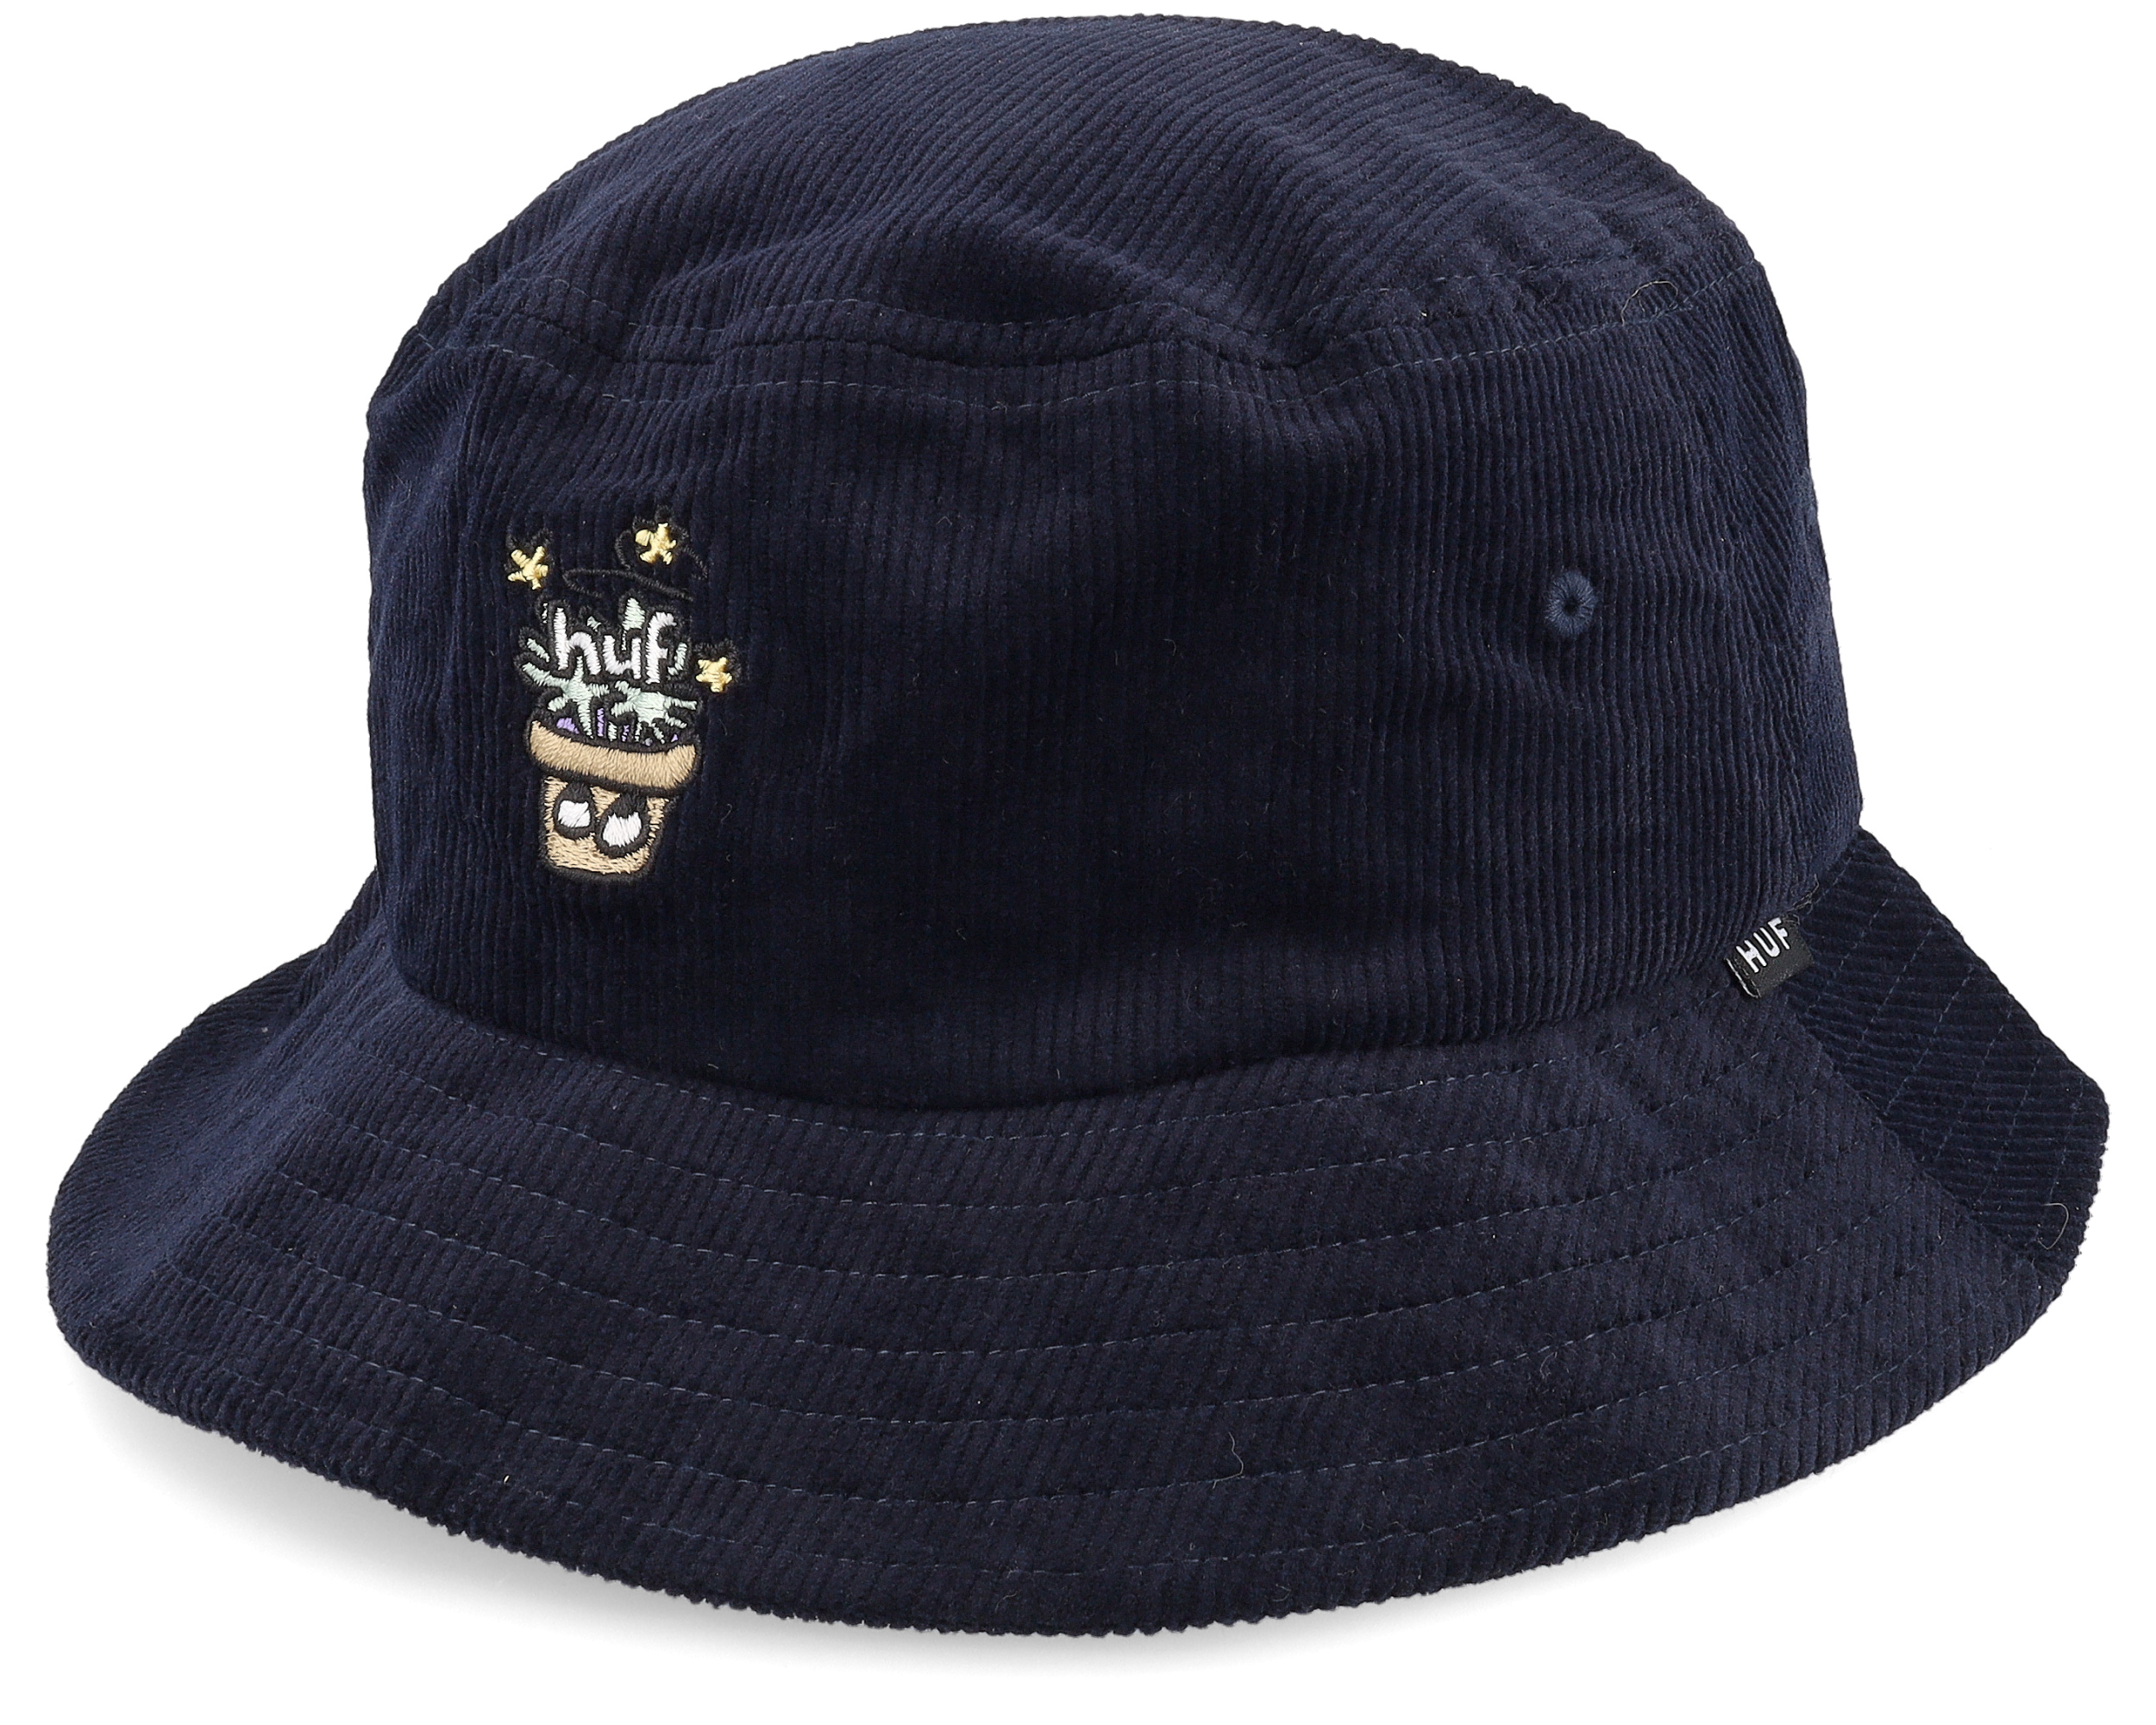 Pot Head Hat Navy Bucket - HUF hat | Hatstore.co.uk